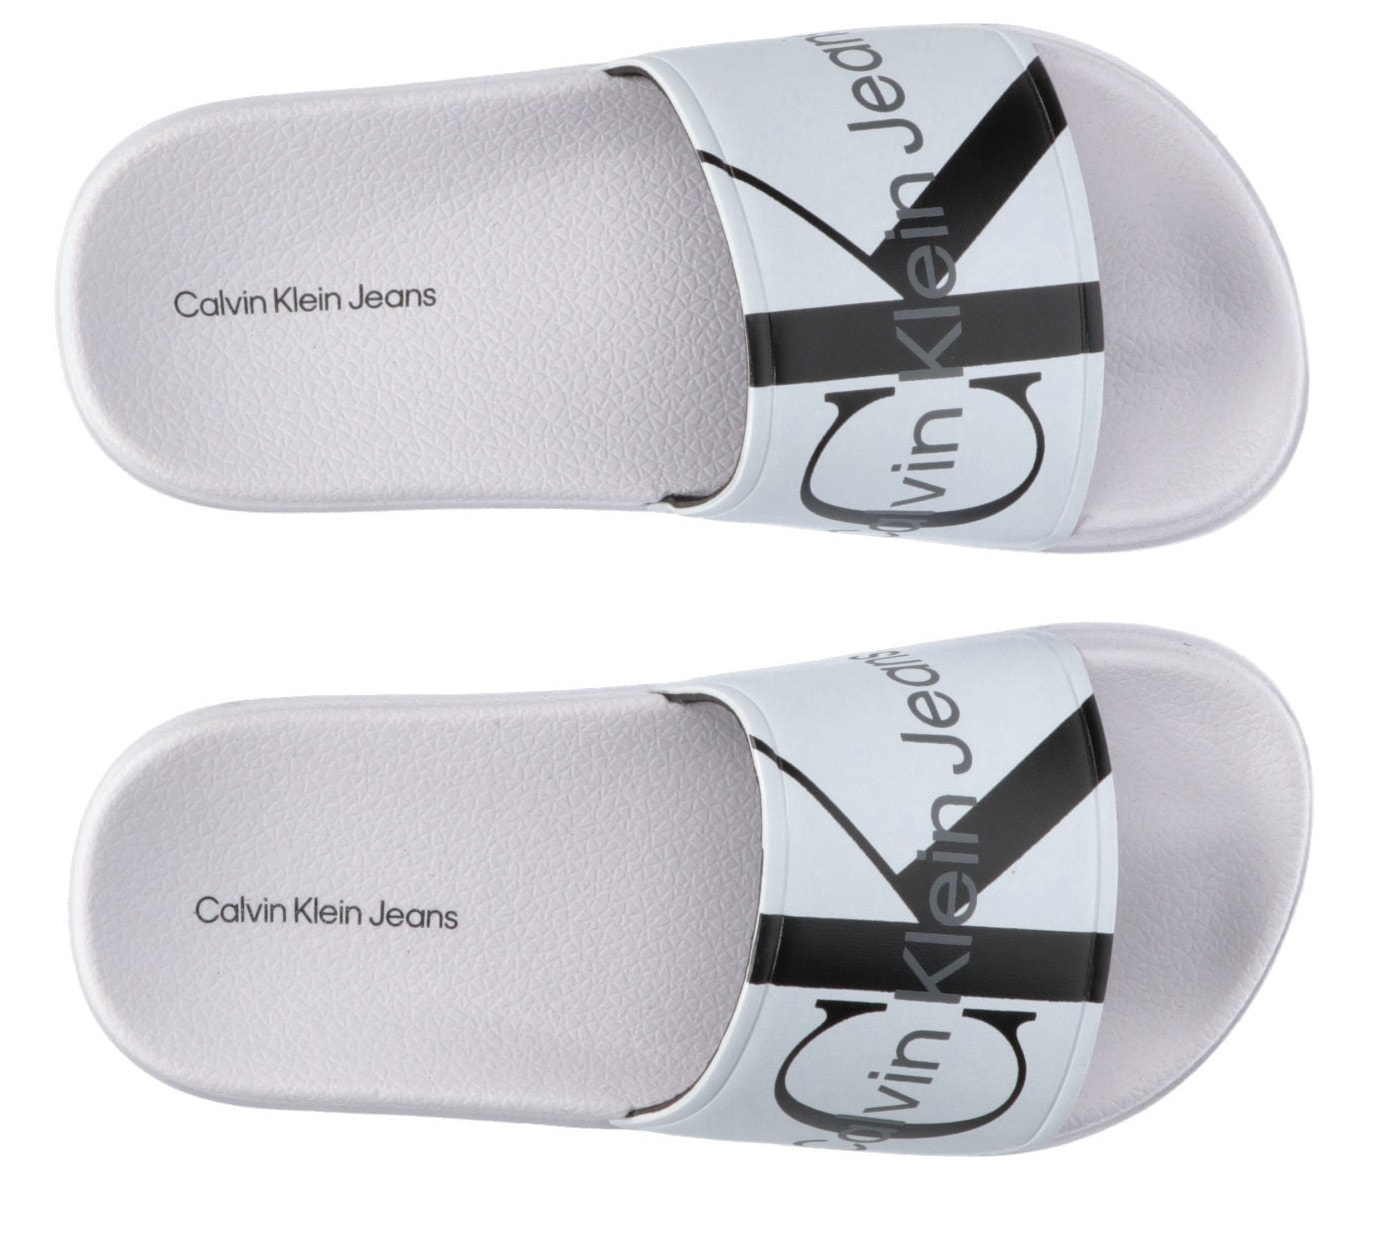 Calvin Klein Jeans Badepantolette »LOGO POOL SLIDE«, Sommerschuh, Schlappen, Badeschuh, Poolslides mit grossem Logodruck